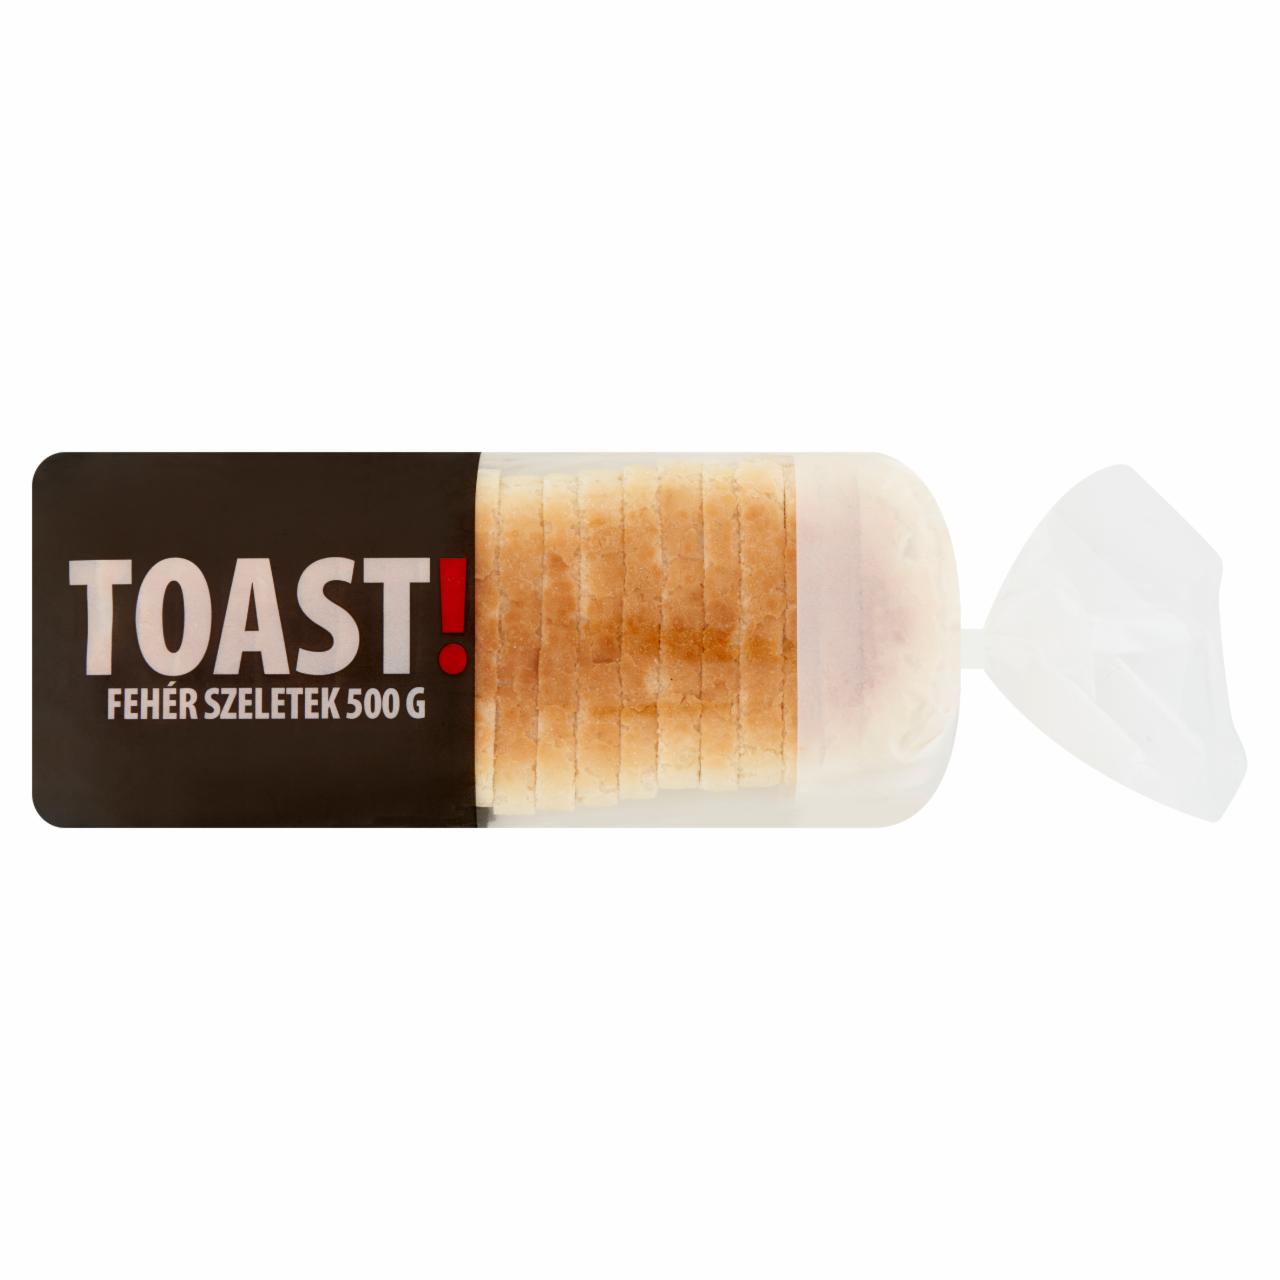 Képek - Toast! fehér szeletek 500 g